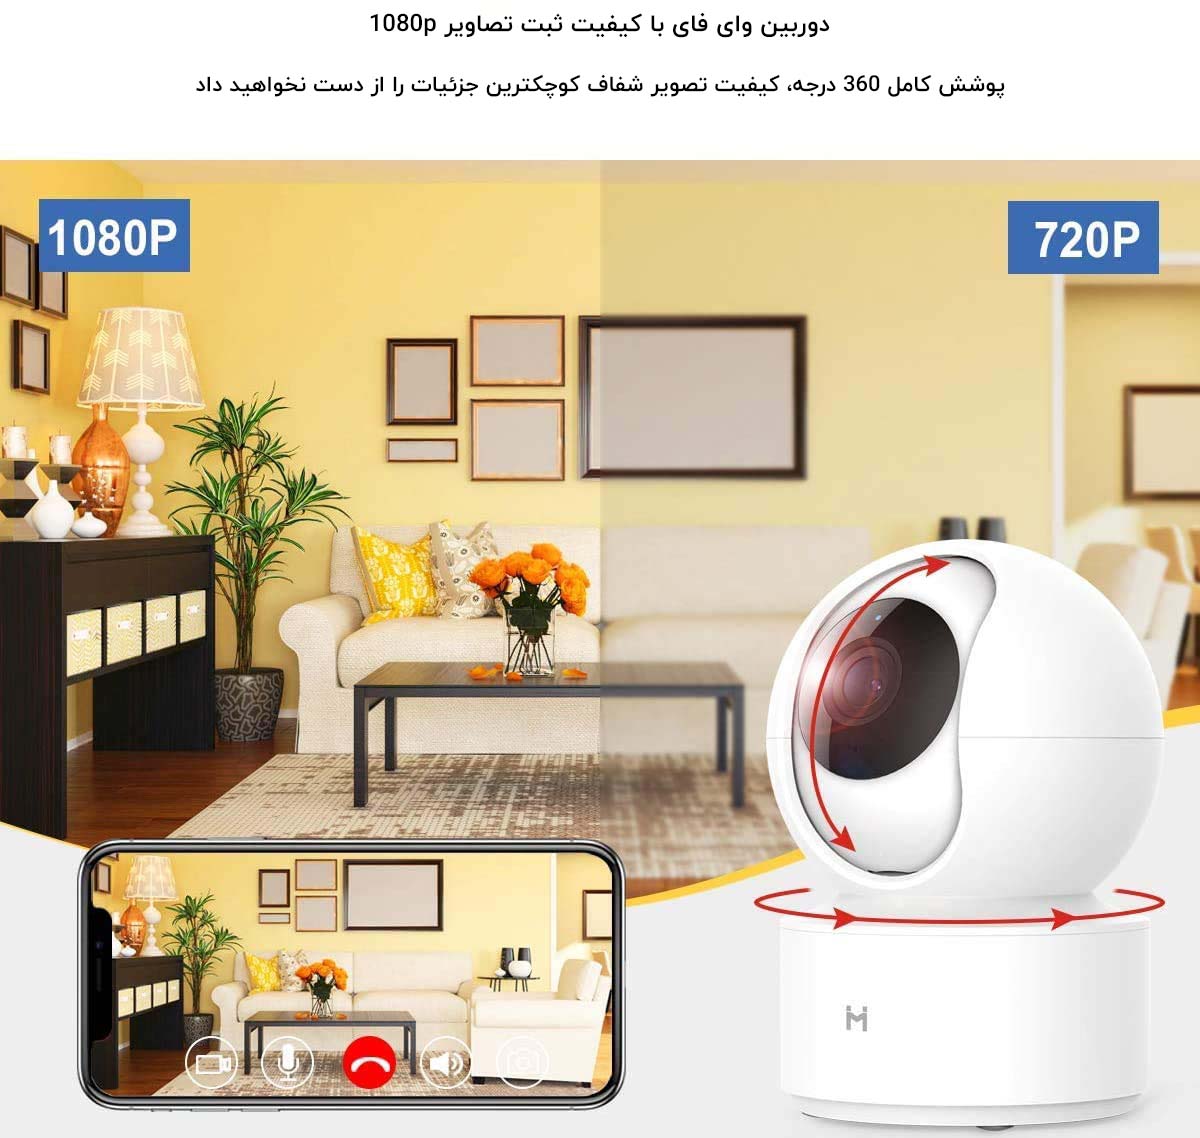 دوربین هوشمند شیائومی IMILAB Home Security Camera PTZ 1080P